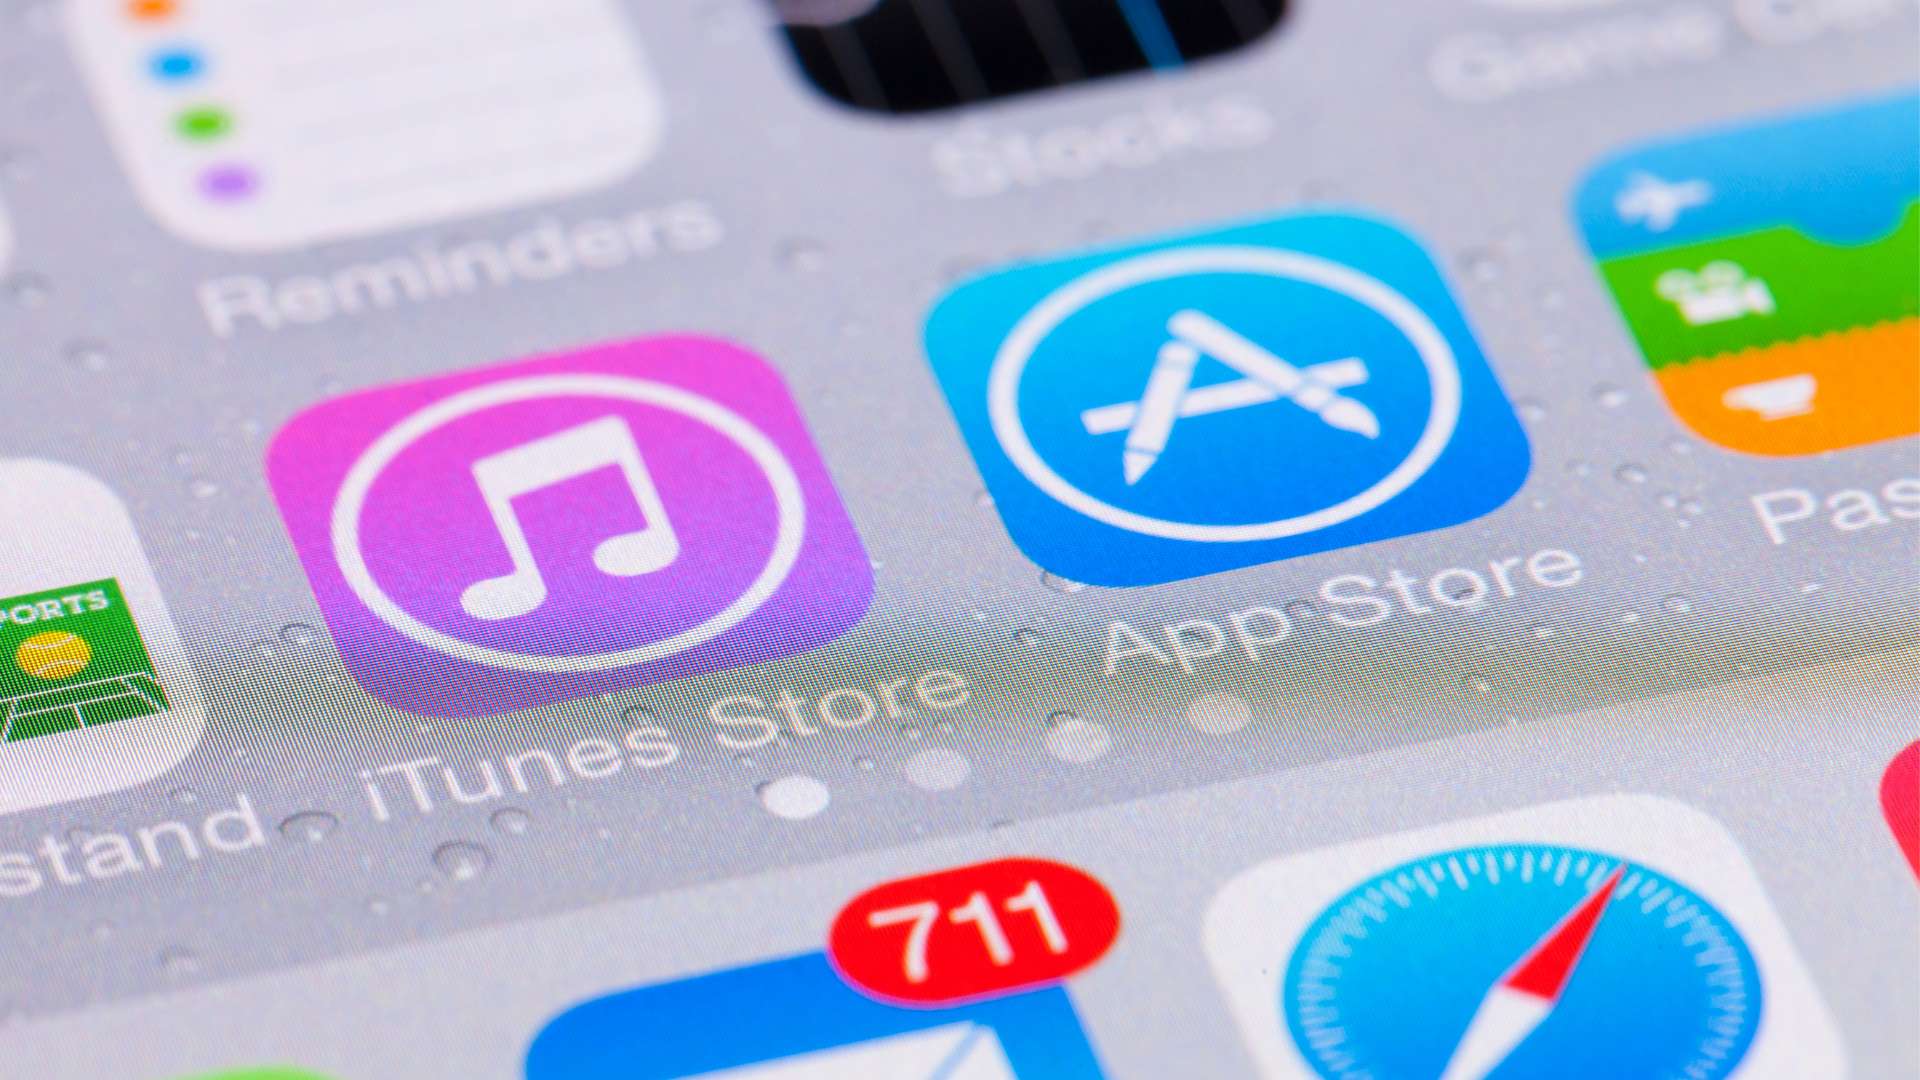 Tham khảo ngay cách khắc phục iTunes không nhận iPhone đơn giản